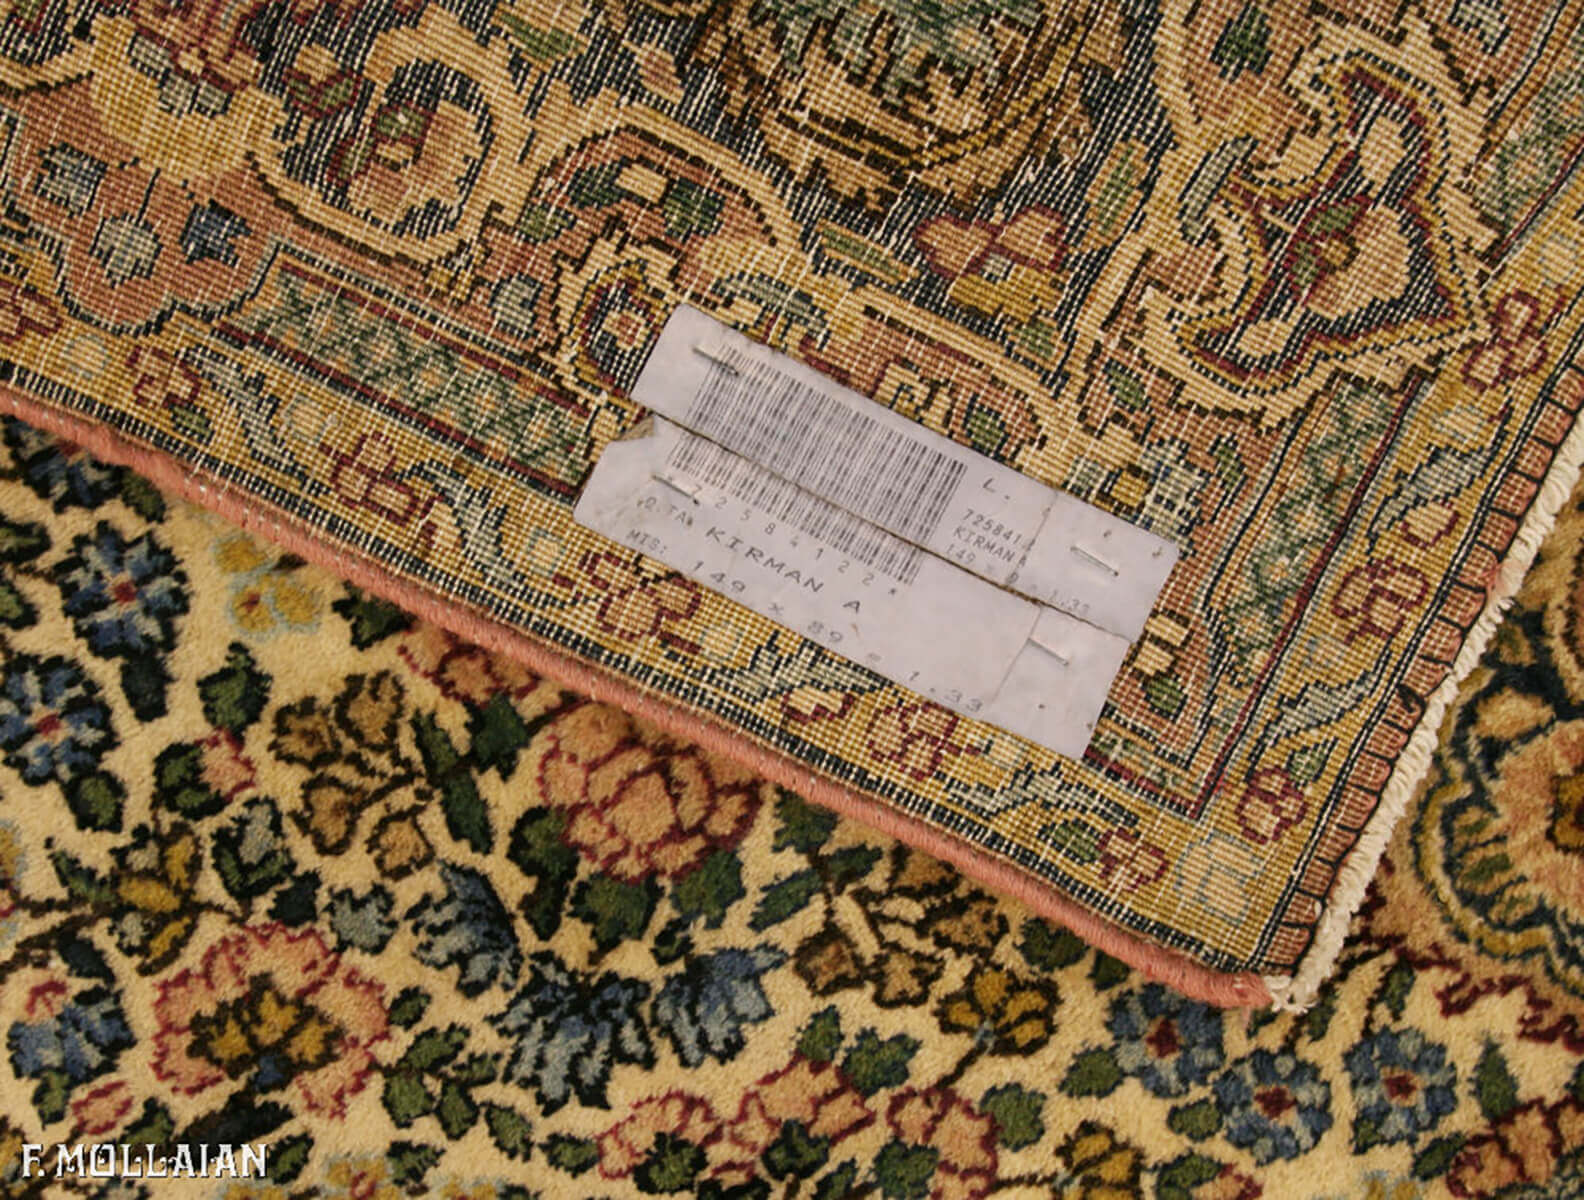 Semi-Antique Persian Kerman Rug n°:72584122